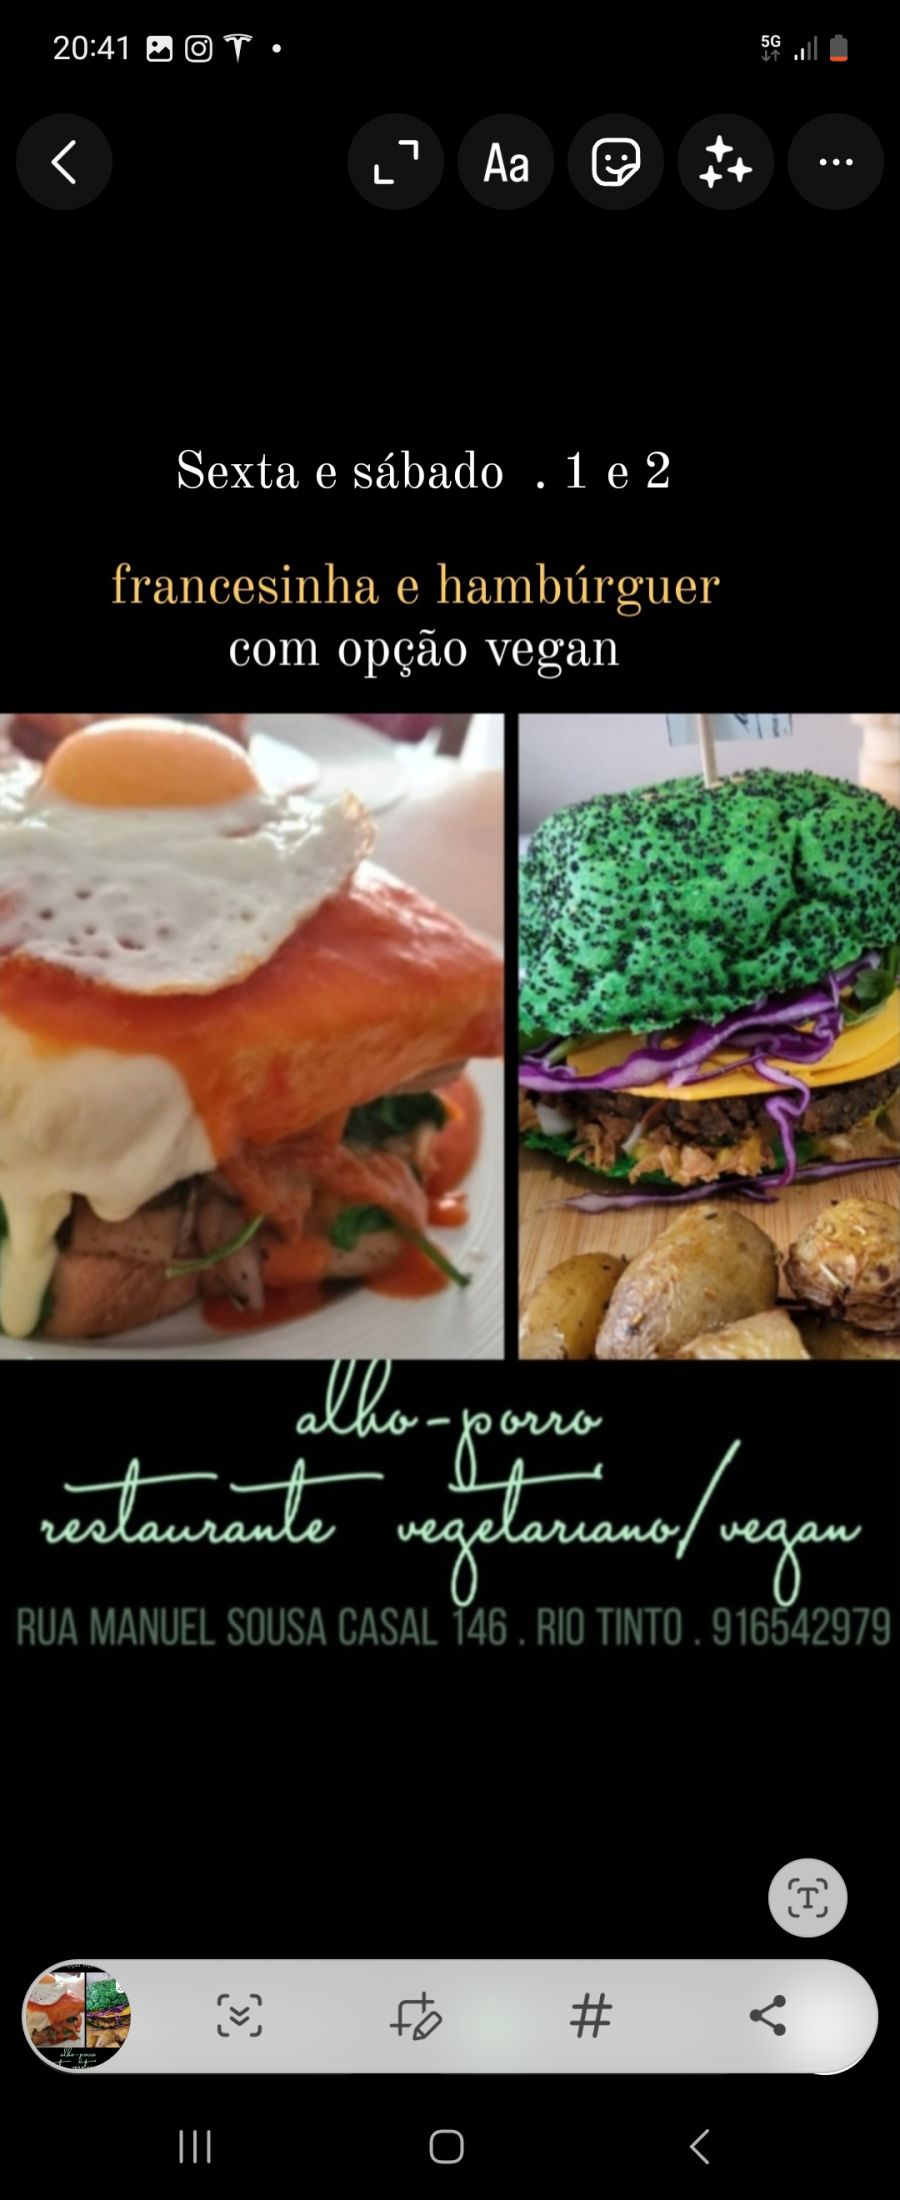 Festival da francesinha e hambúrguer vegan 